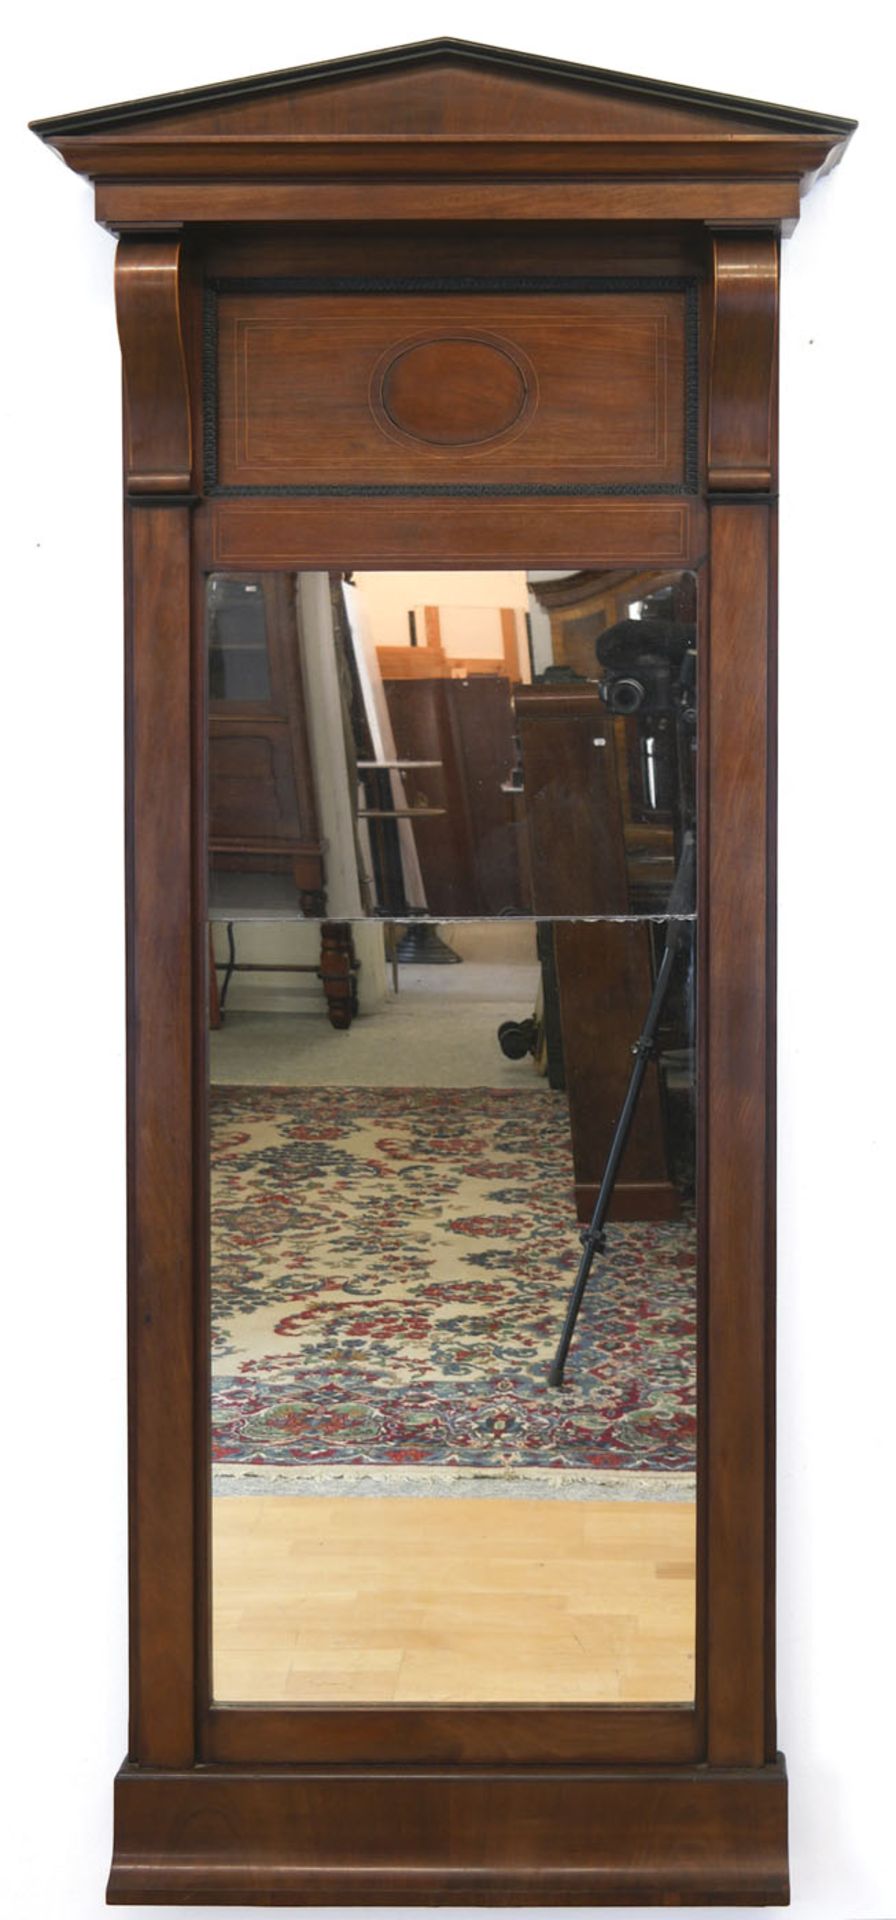 Biedermeier-Spiegel, Mahagoni furniert, geteiltes Spiegelglas, Giebelfeld mit seitlichen Voluten, S